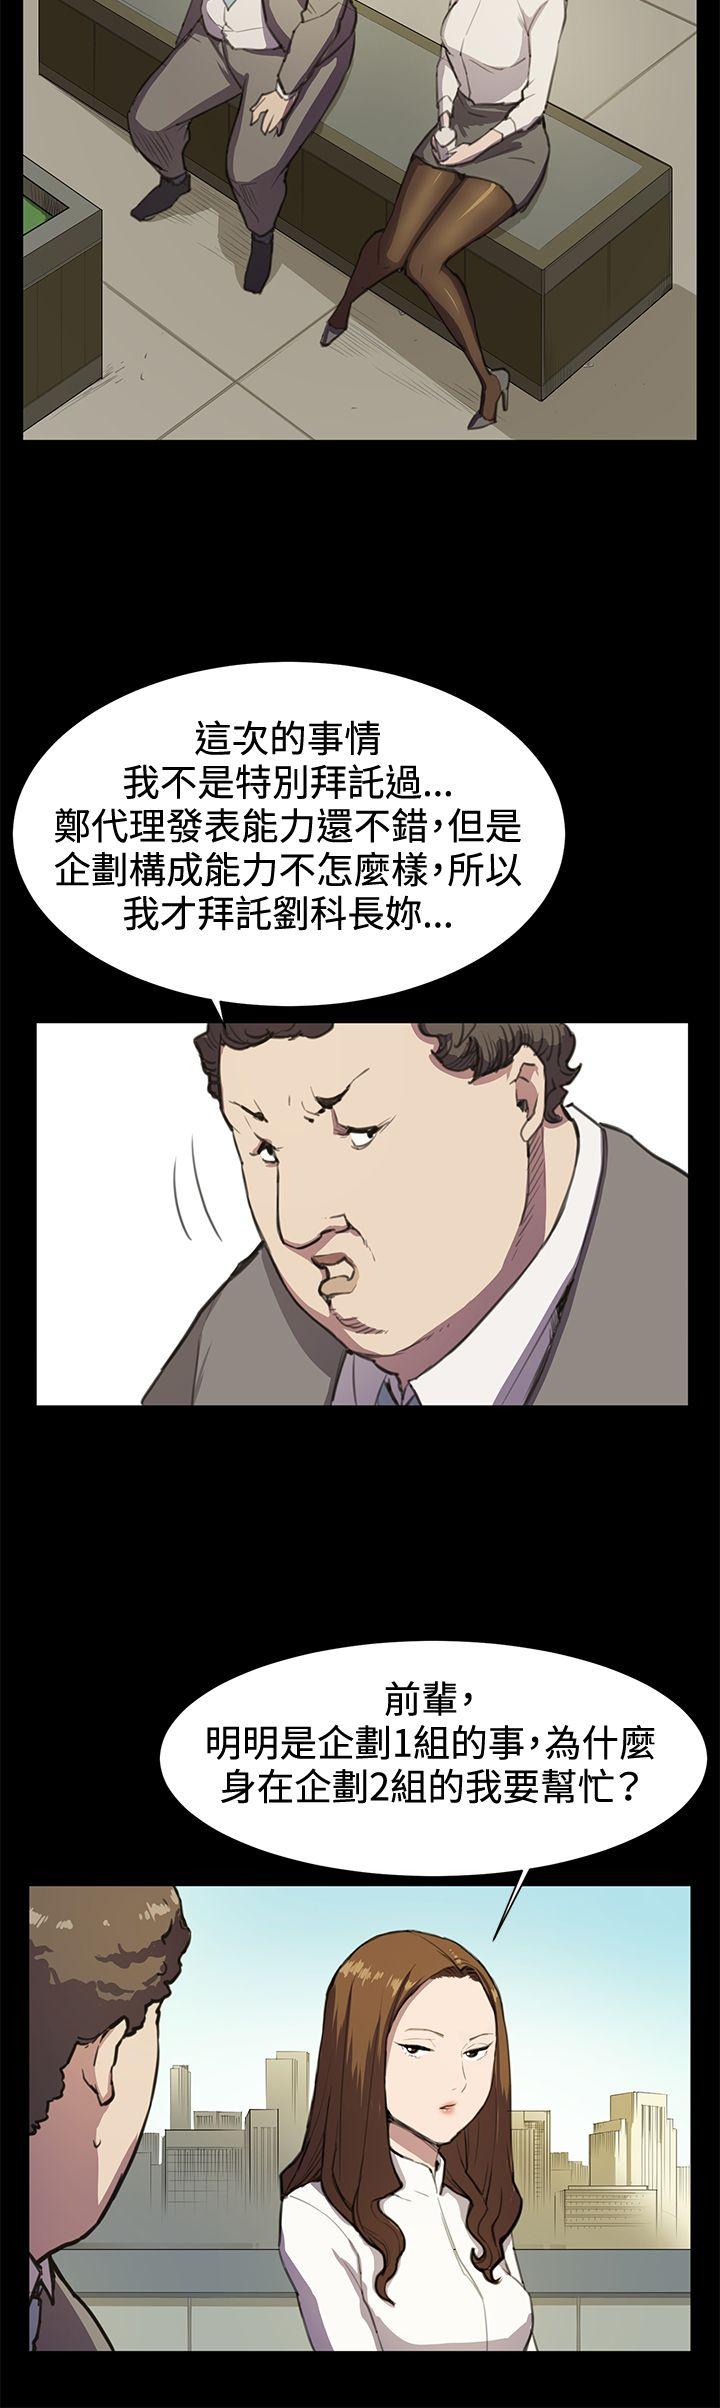 韩国污漫画 深夜便利店 第15话 5